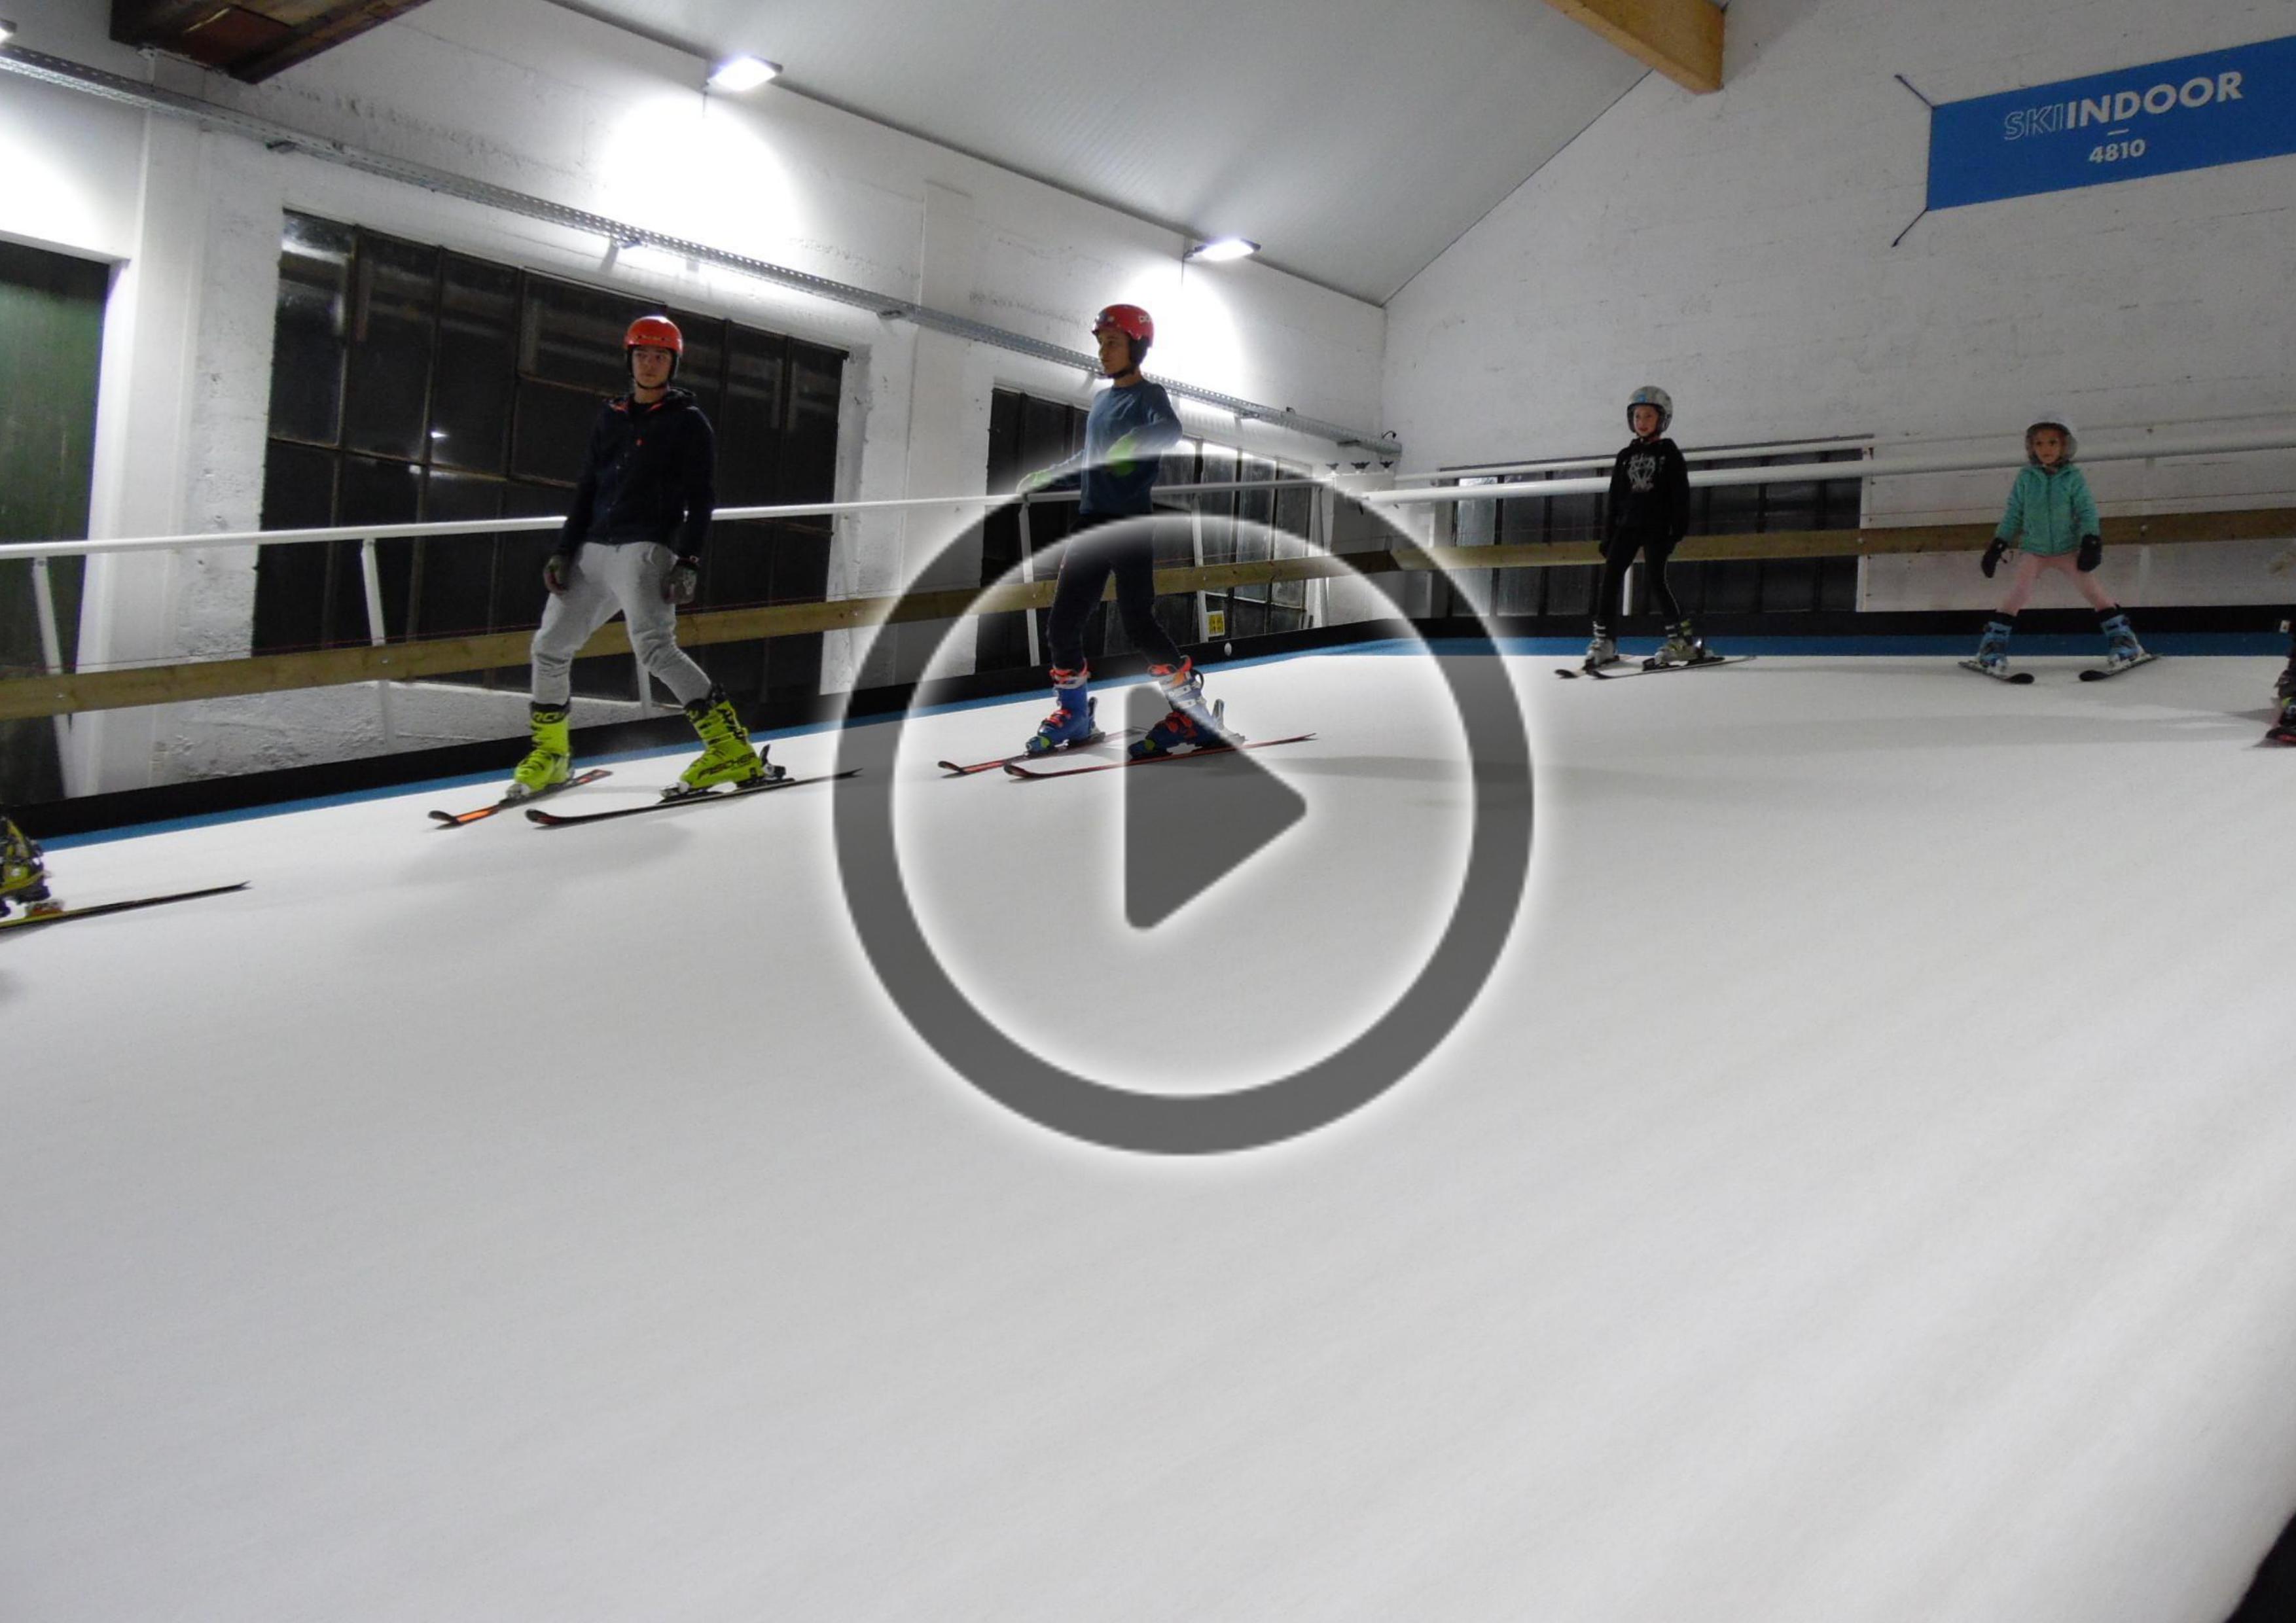 Le plus grand tapis d’Europe de ski indoor - Actus & Evènements Megève